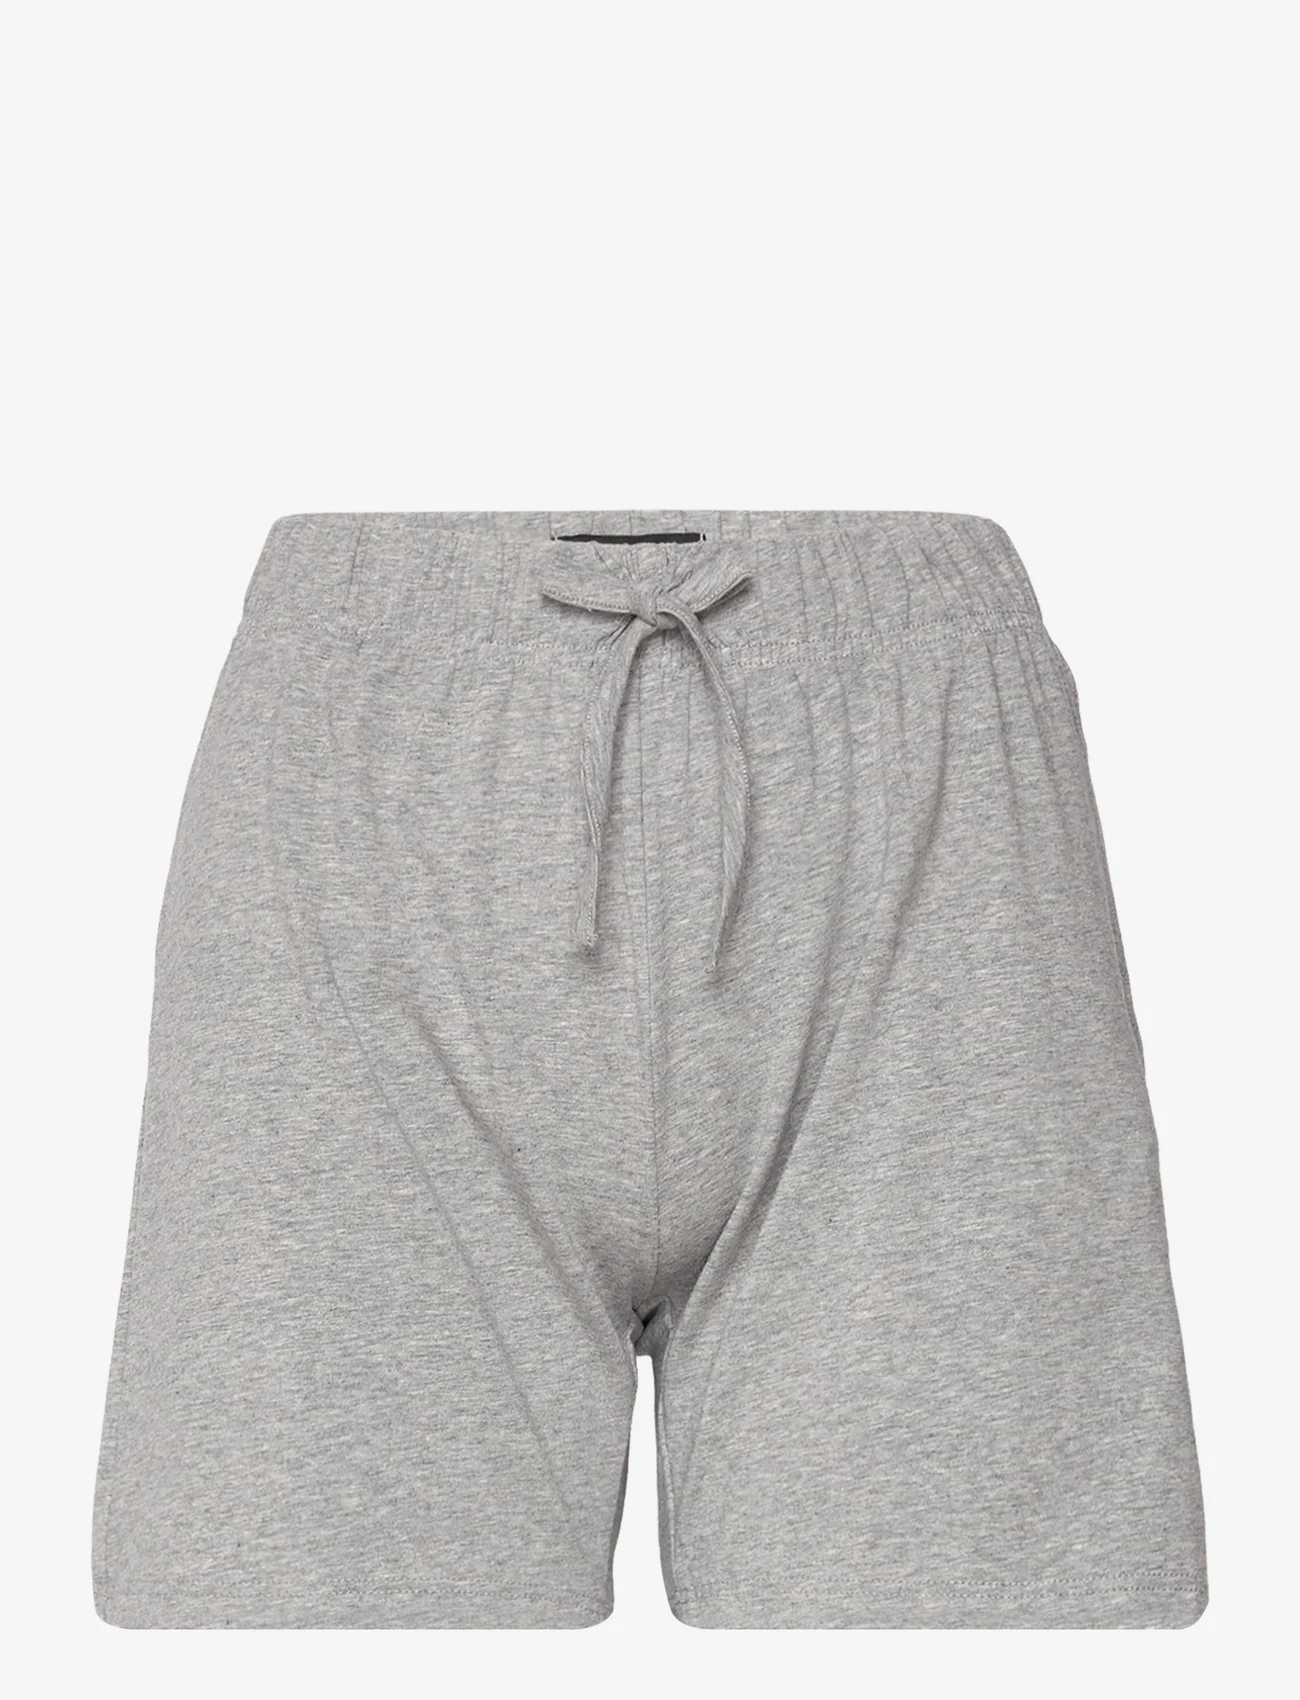 Decoy - DECOY pj shorts - zemākās cenas - light grey - 0